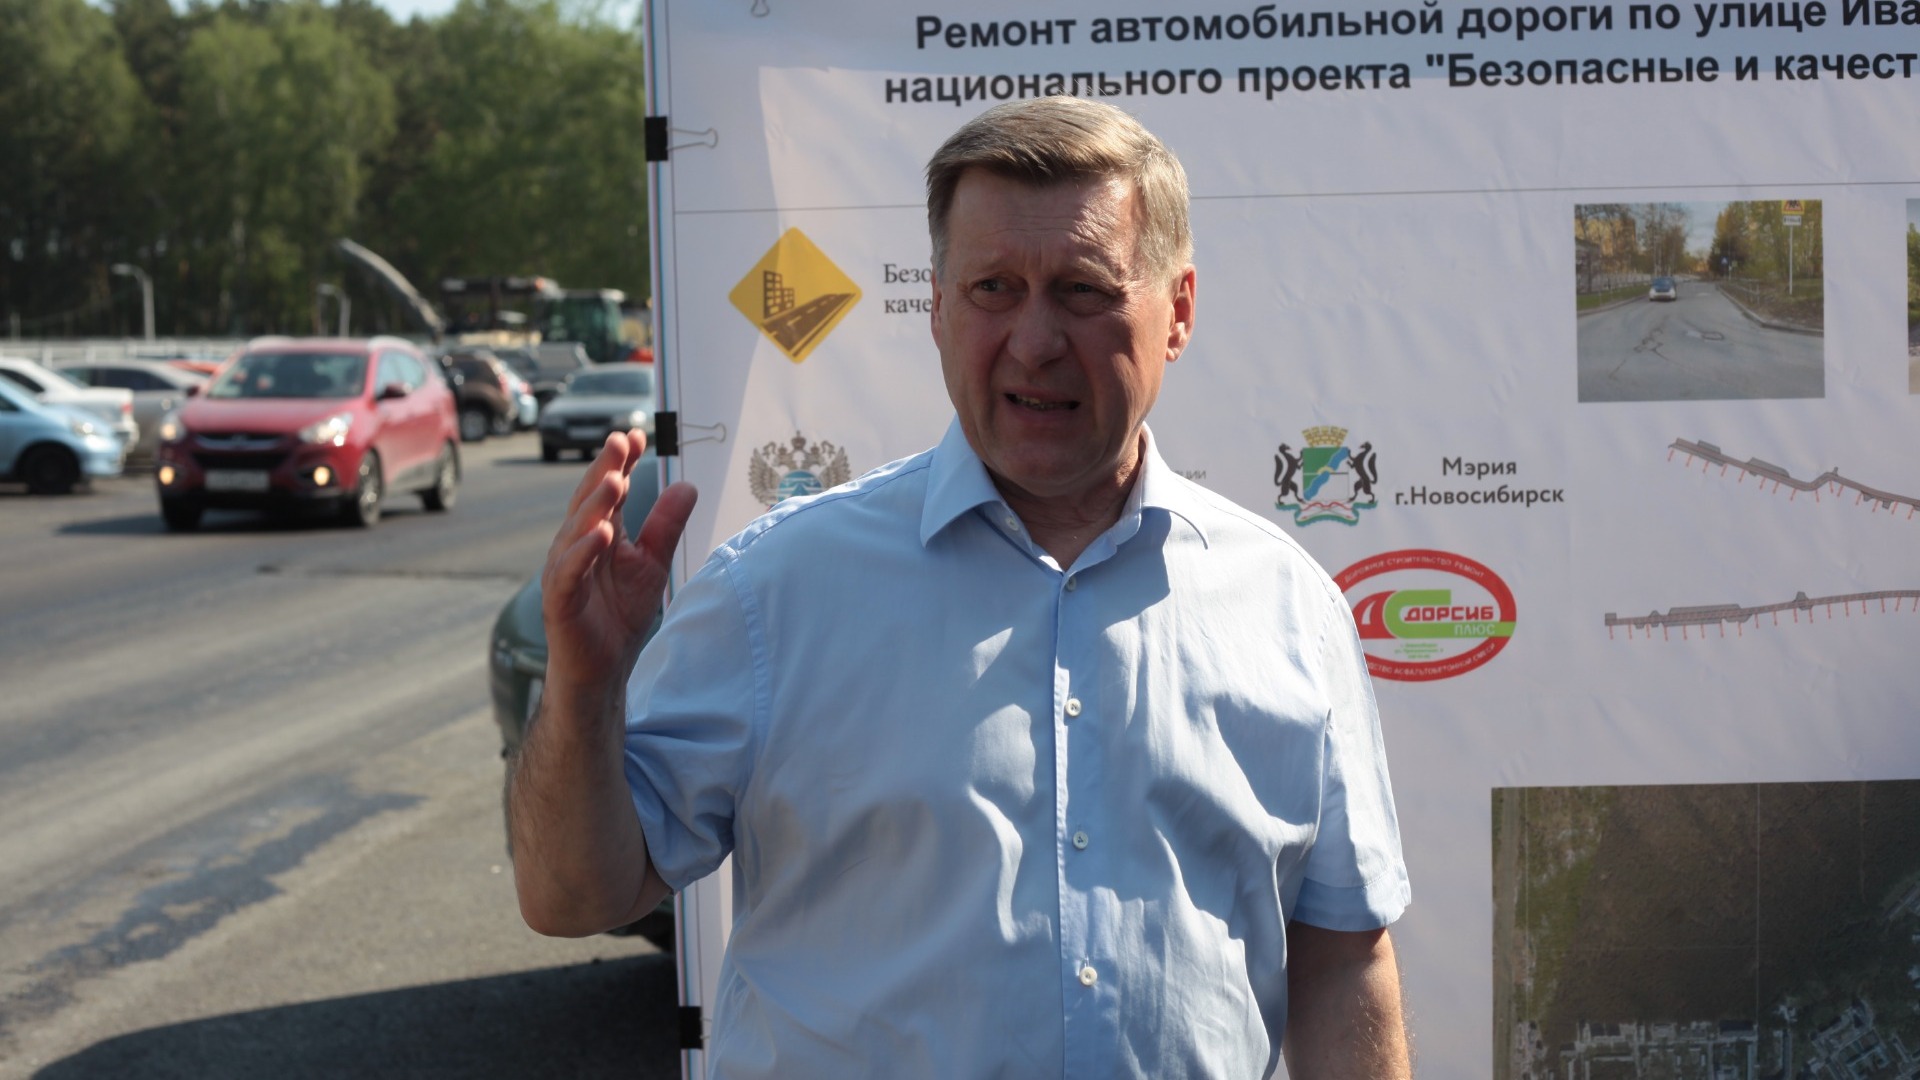 Анатолий Локоть рассказал, сколько средств выделено на ремонт дорог в Советском районе